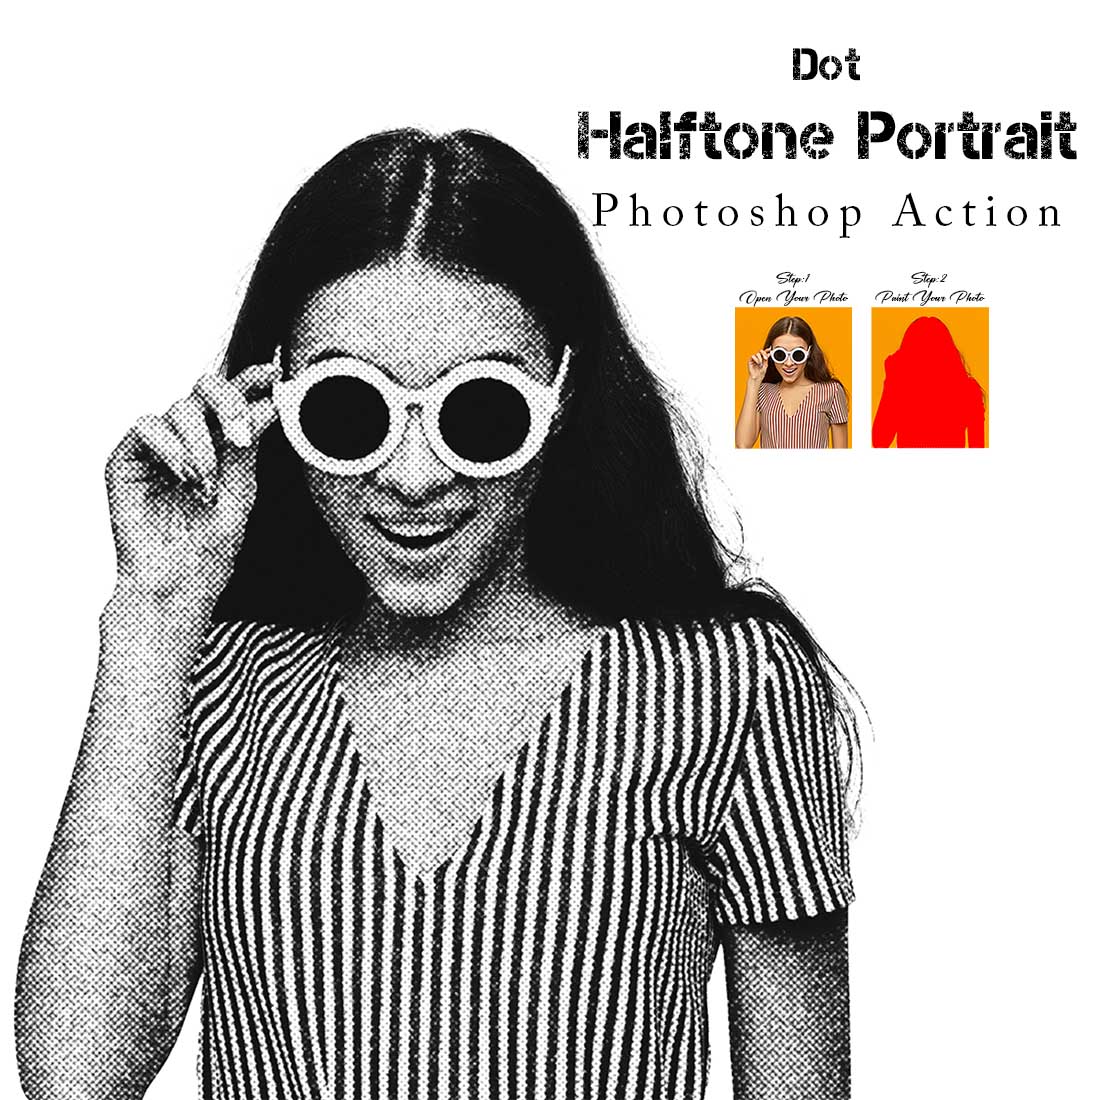 Dot Halftone Portrait Ps Action cover image.